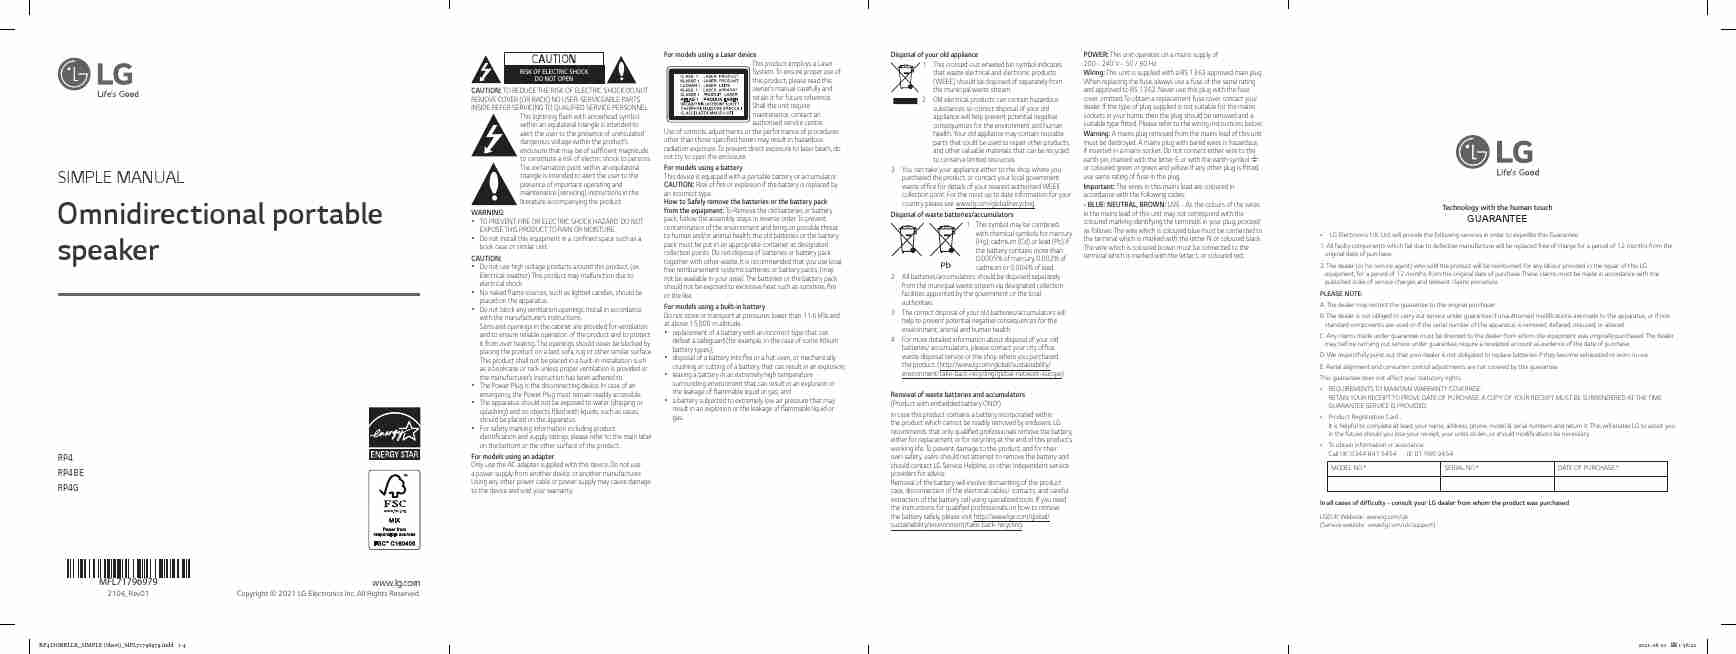 LG RP4G-page_pdf